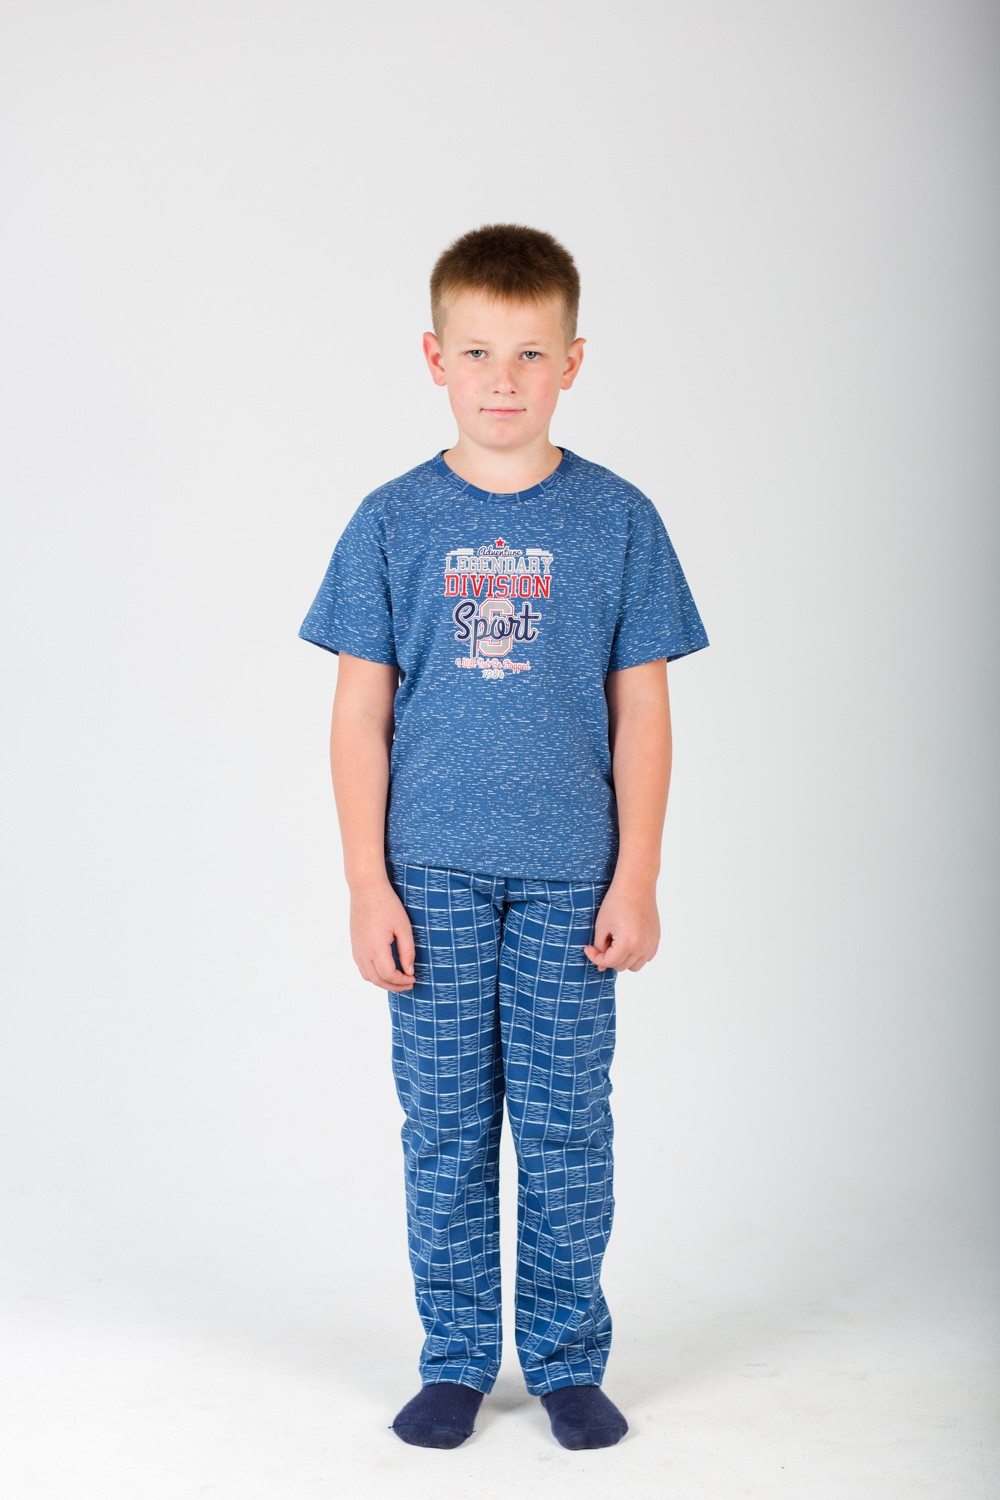 Пижама детская для мальчика "Гарри" футболка и брюки